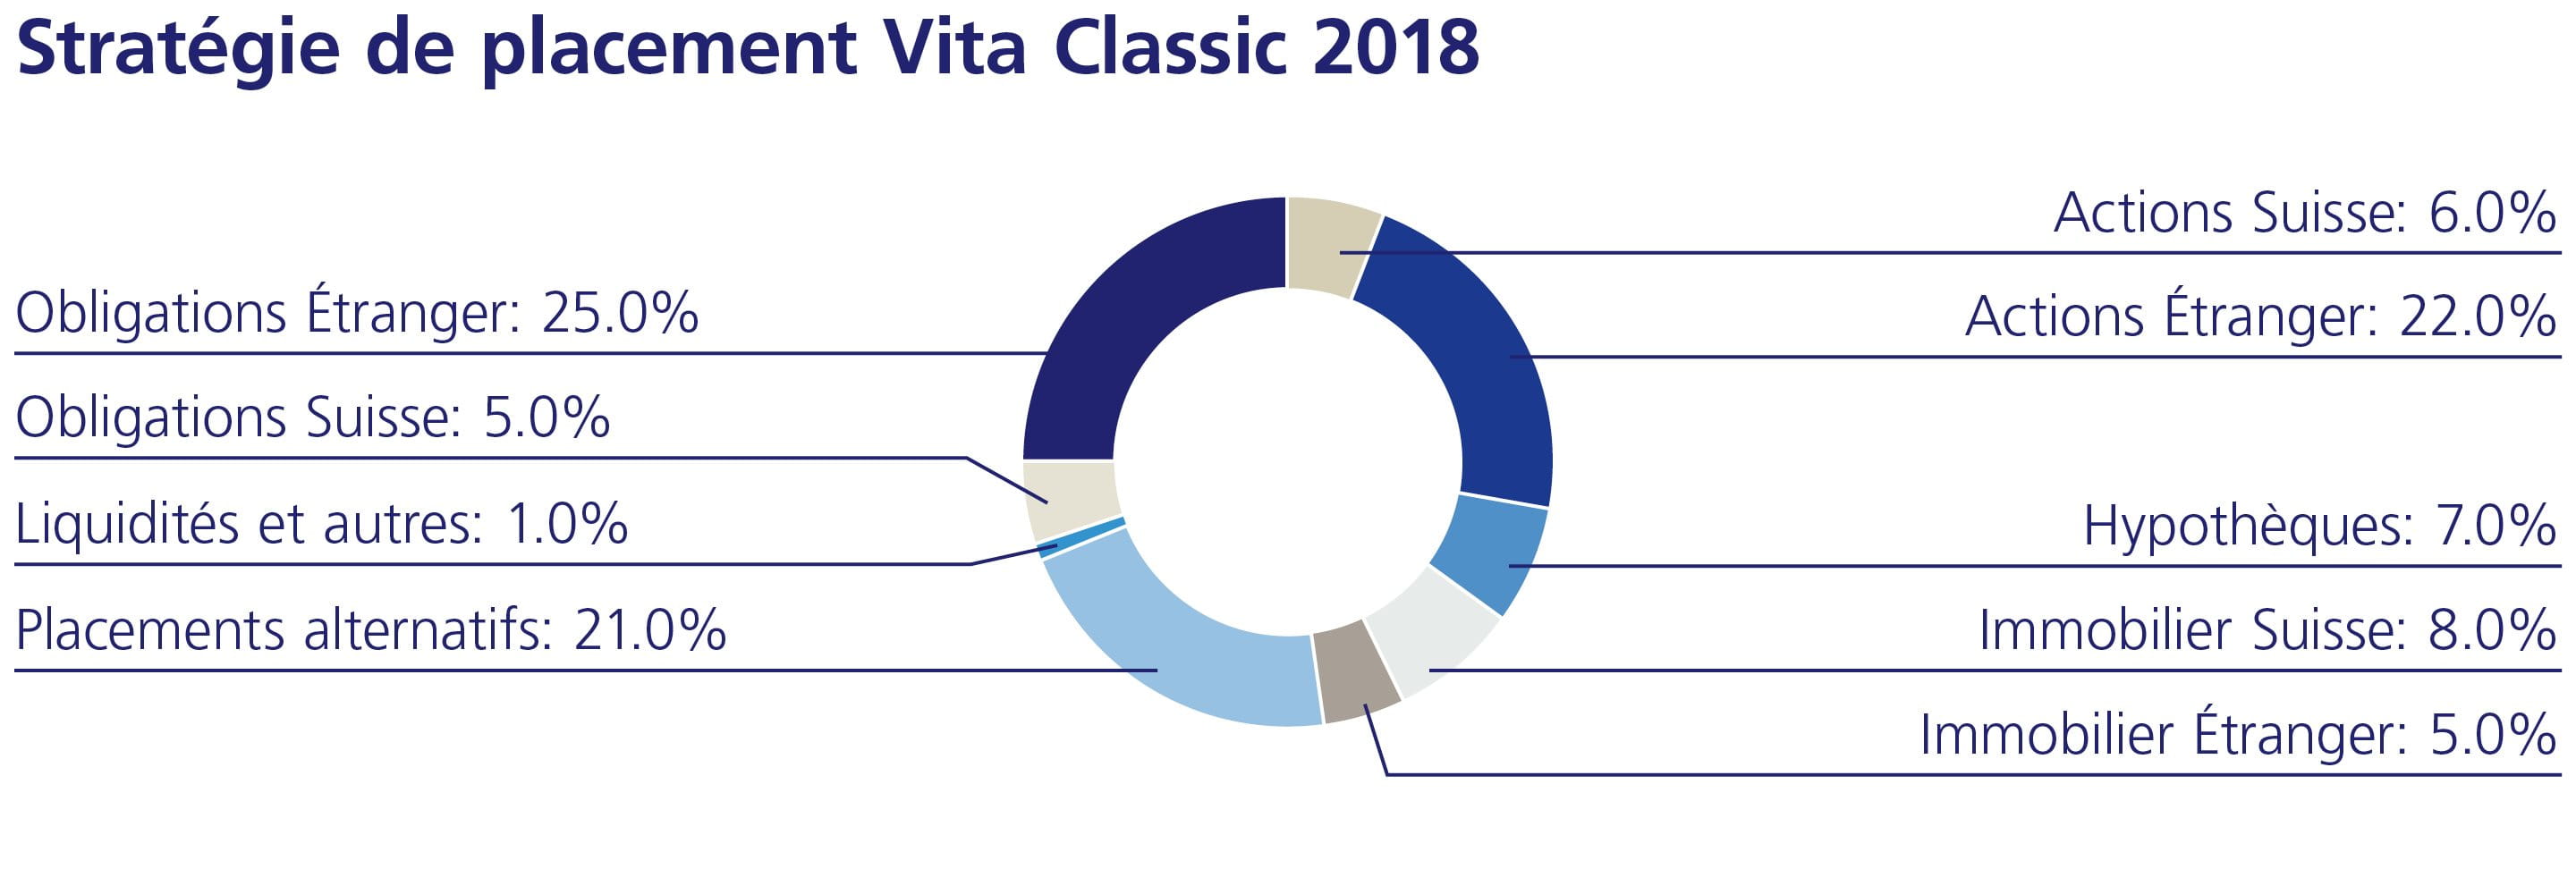 Stratégie de placement Vita Calssic 2018